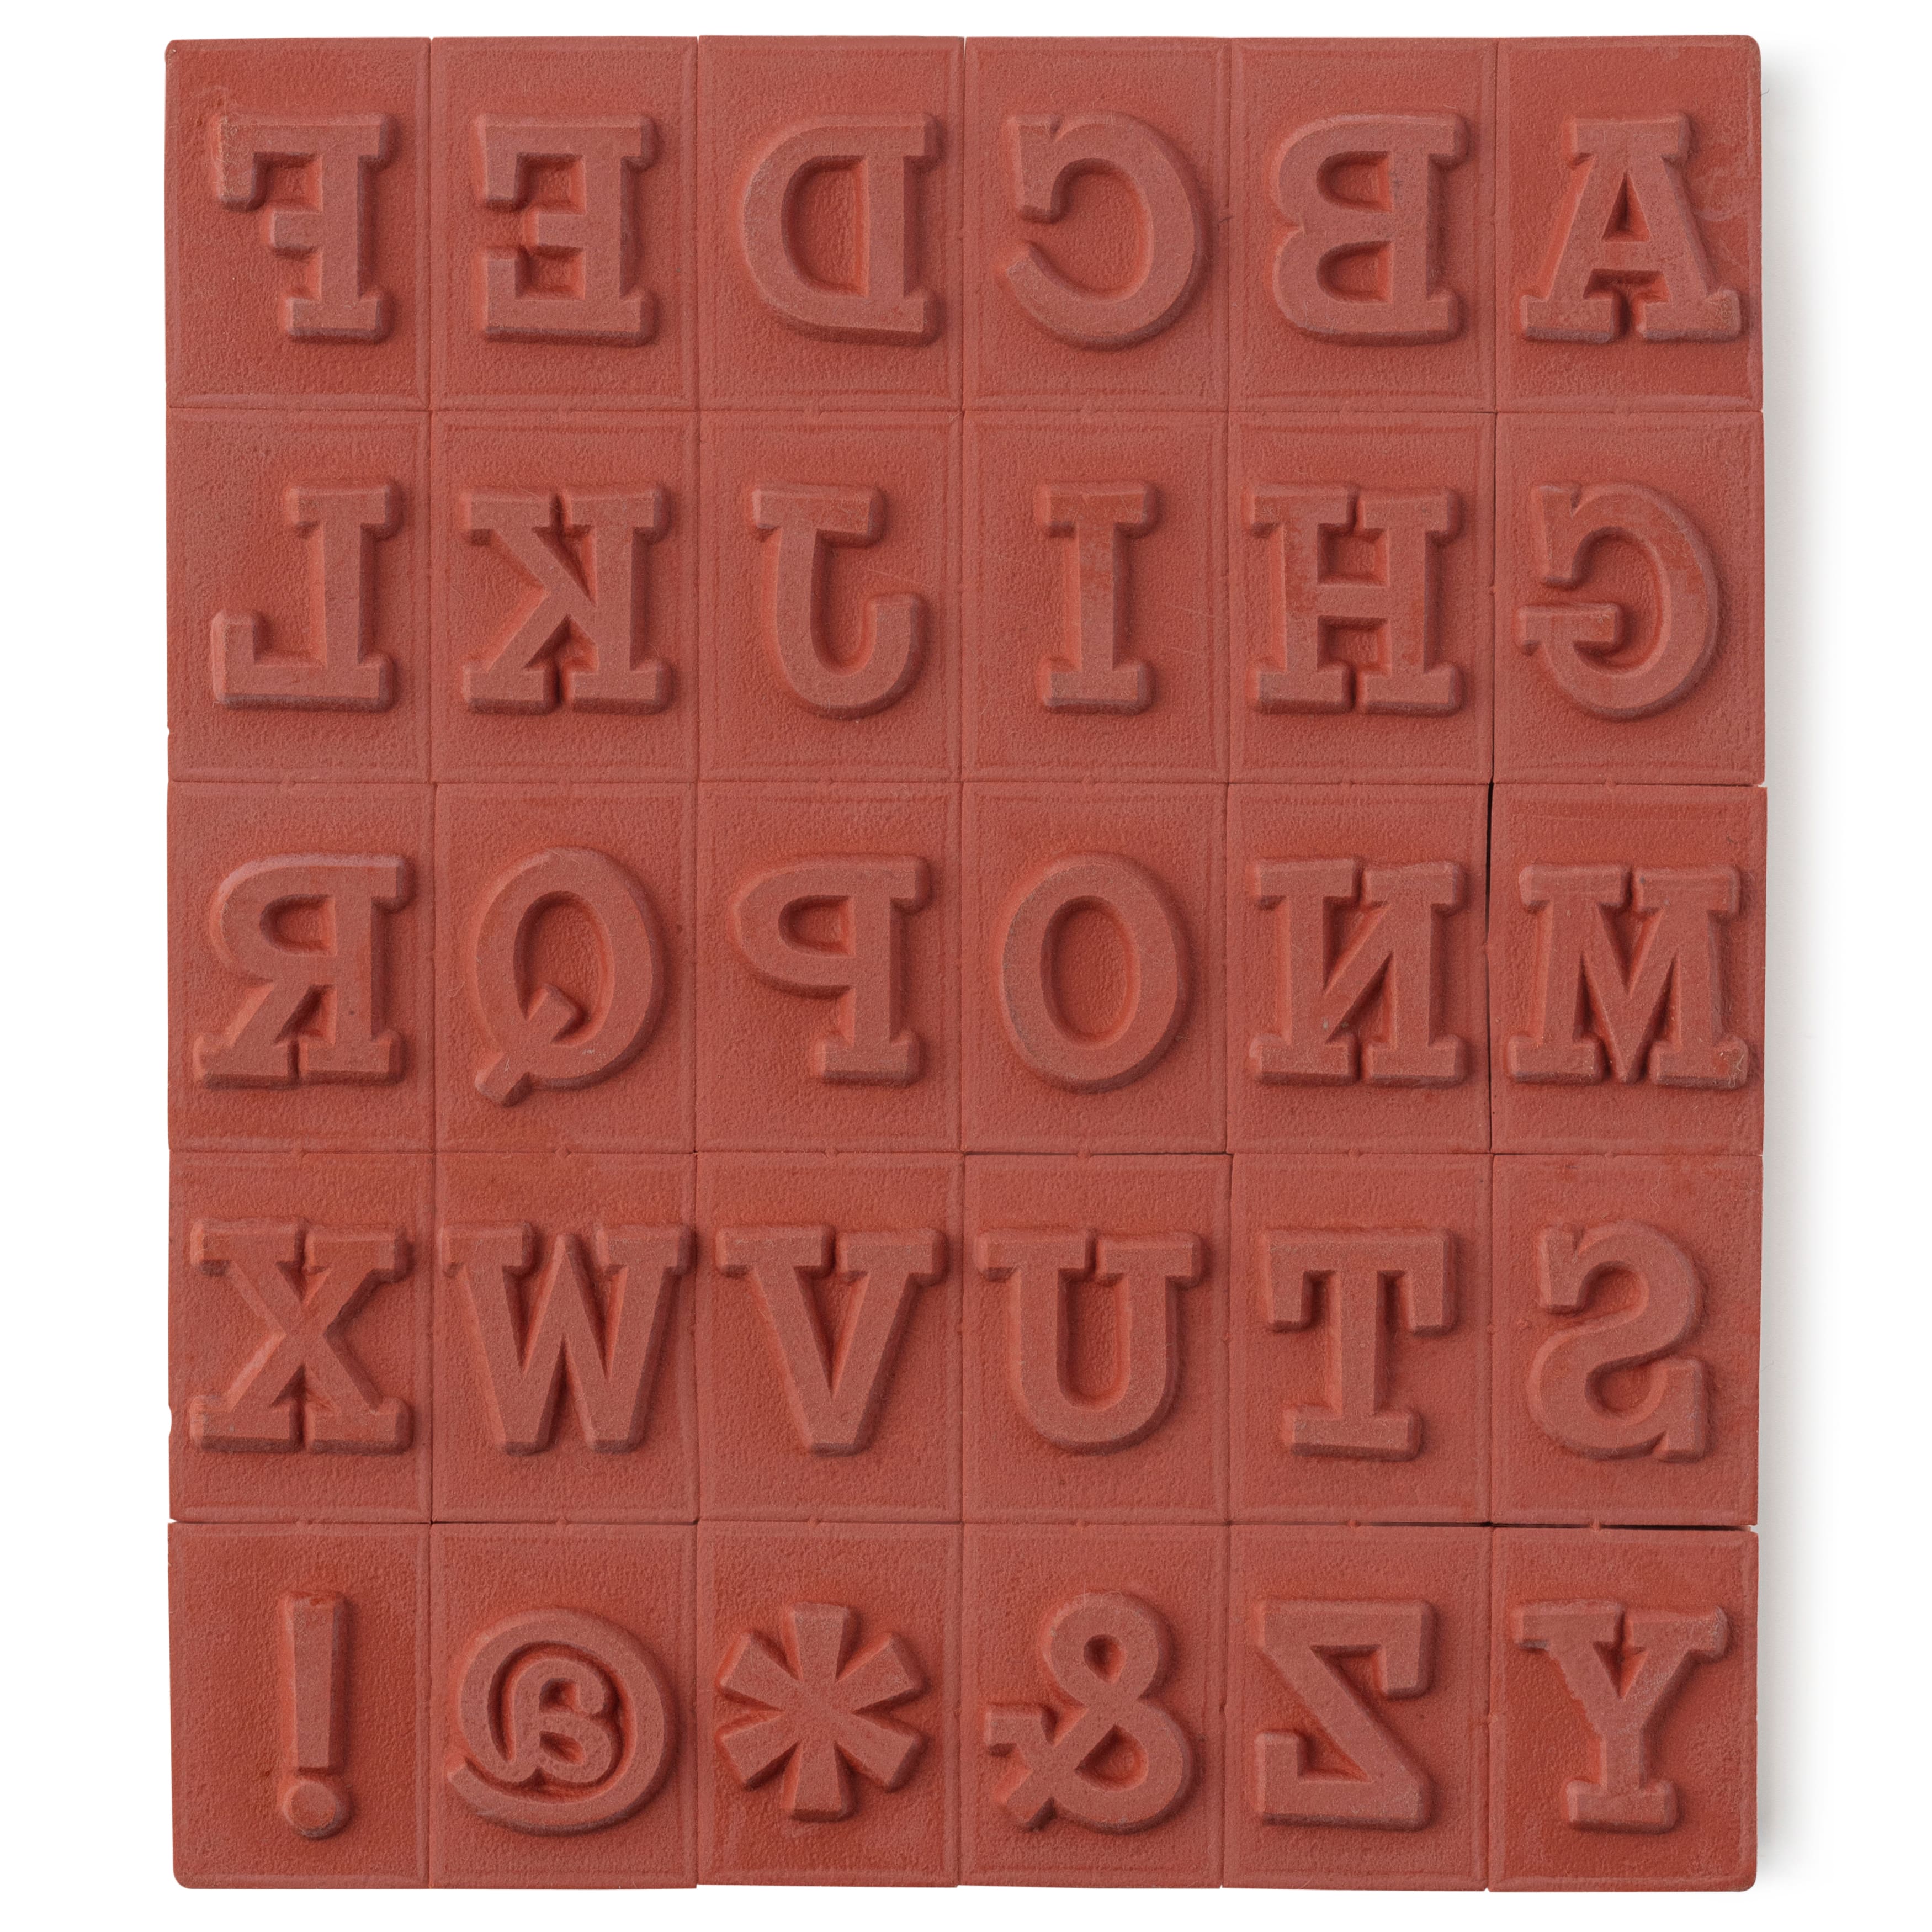 Standard Alphabet Stamp Sets Large